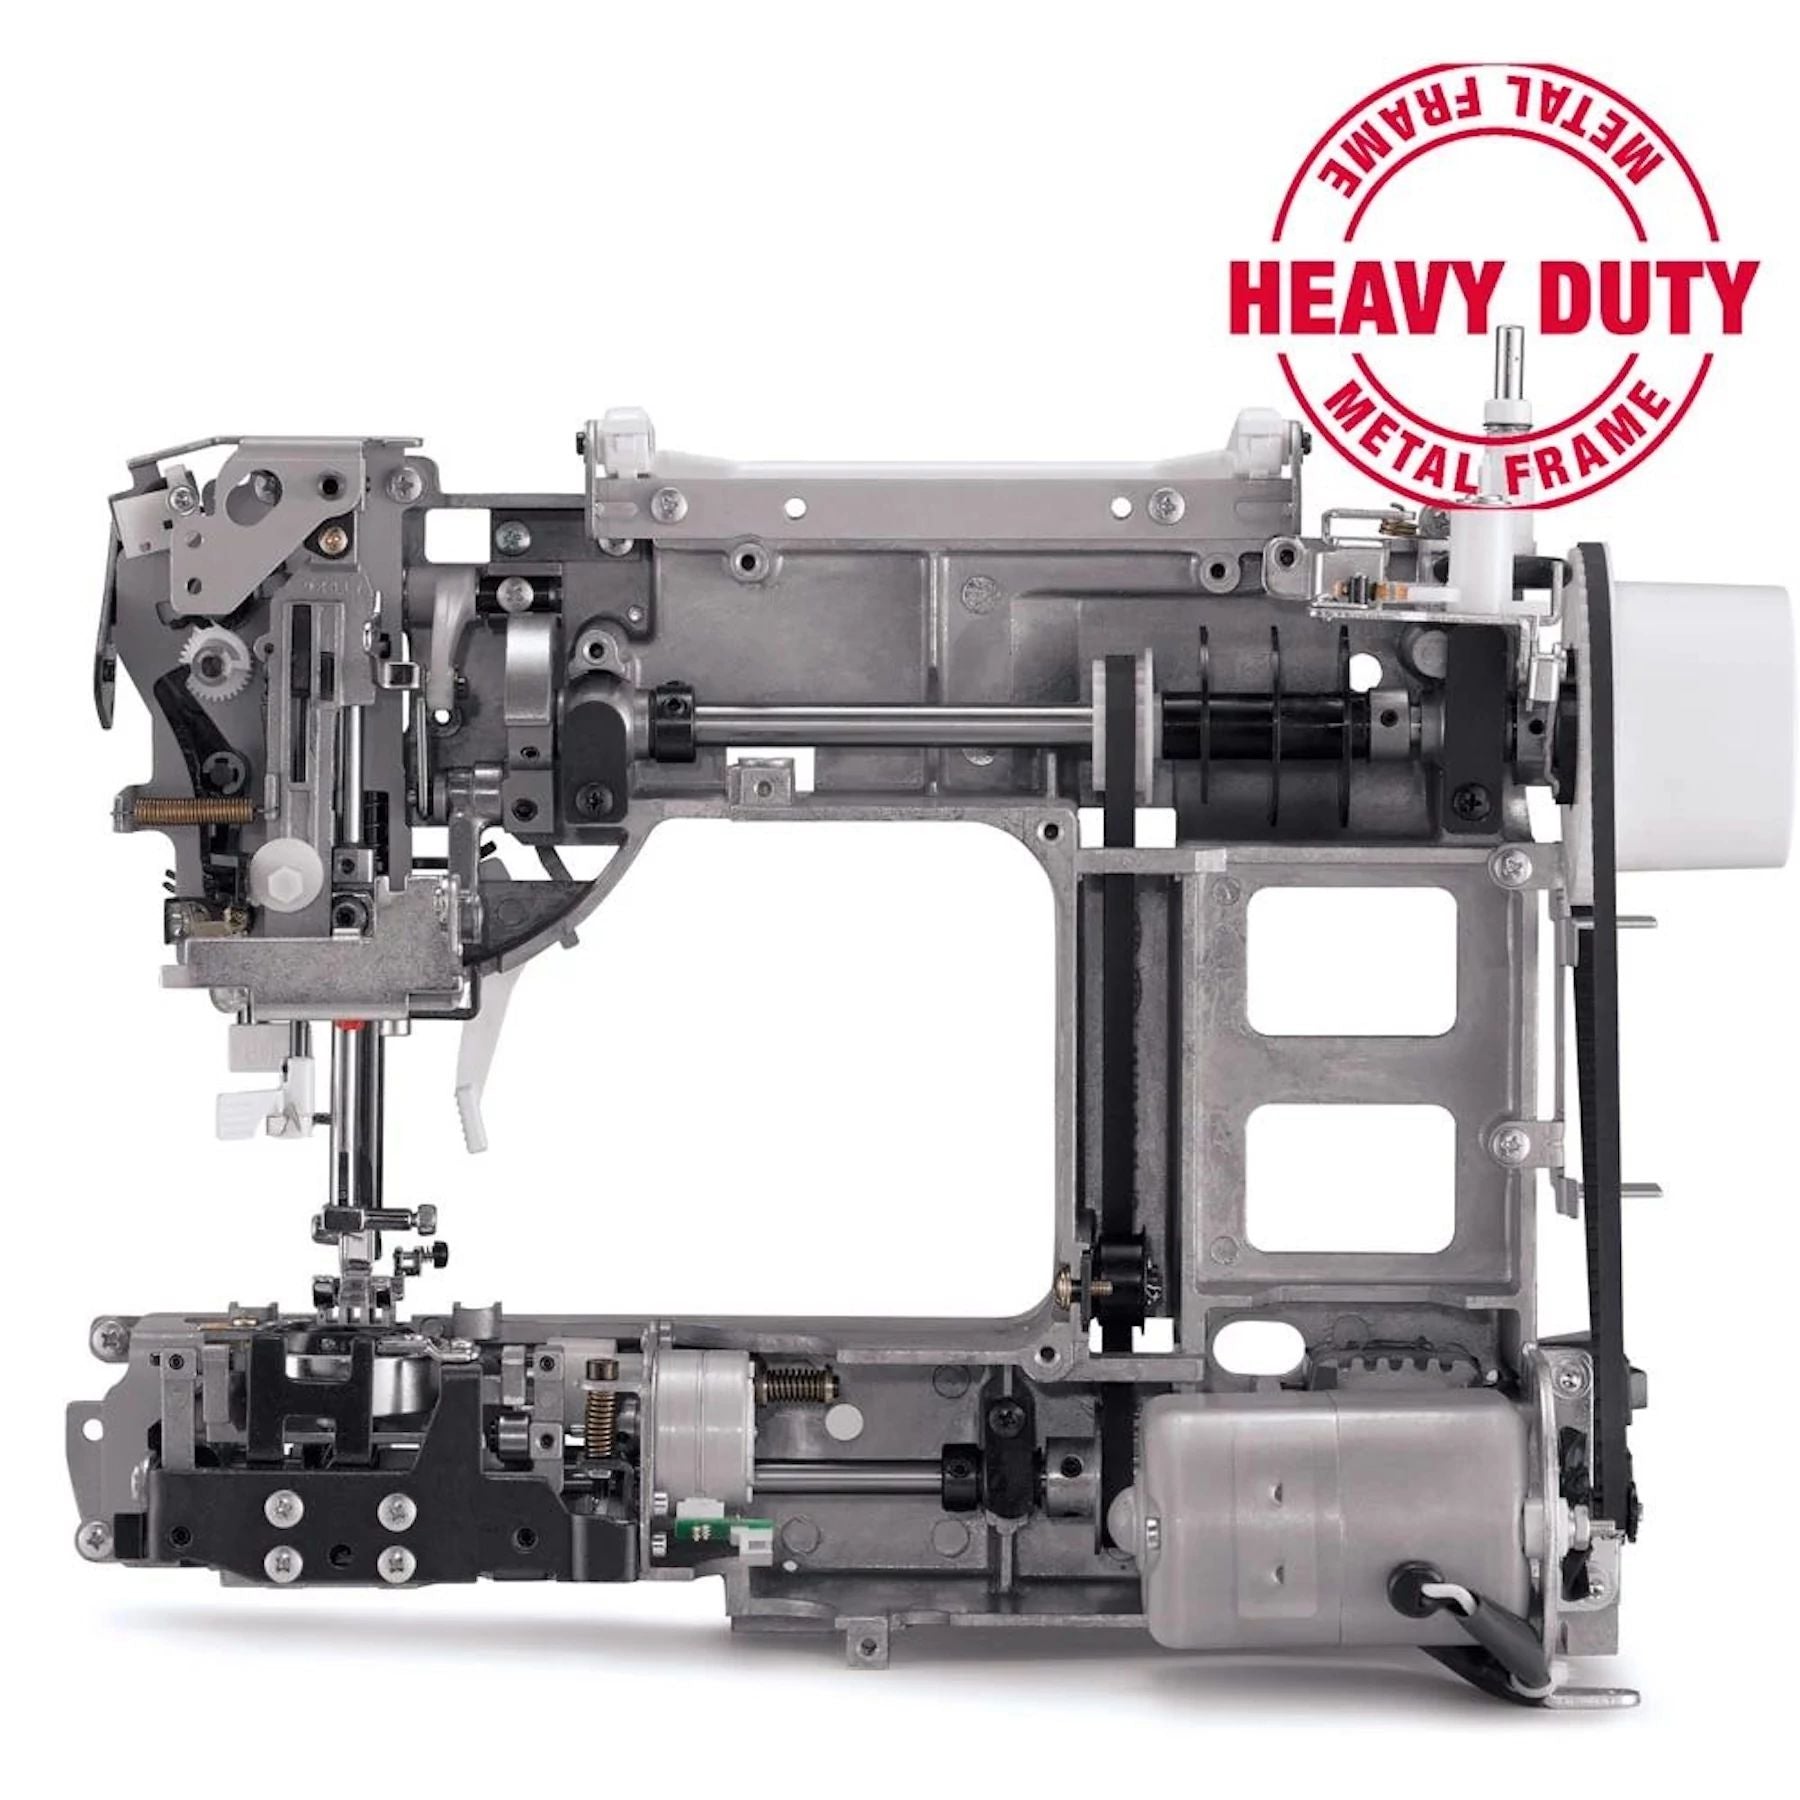 Armazón metálico de alta resistencia que se encuentra en el interior de las máquinas Singer Heavy Duty.